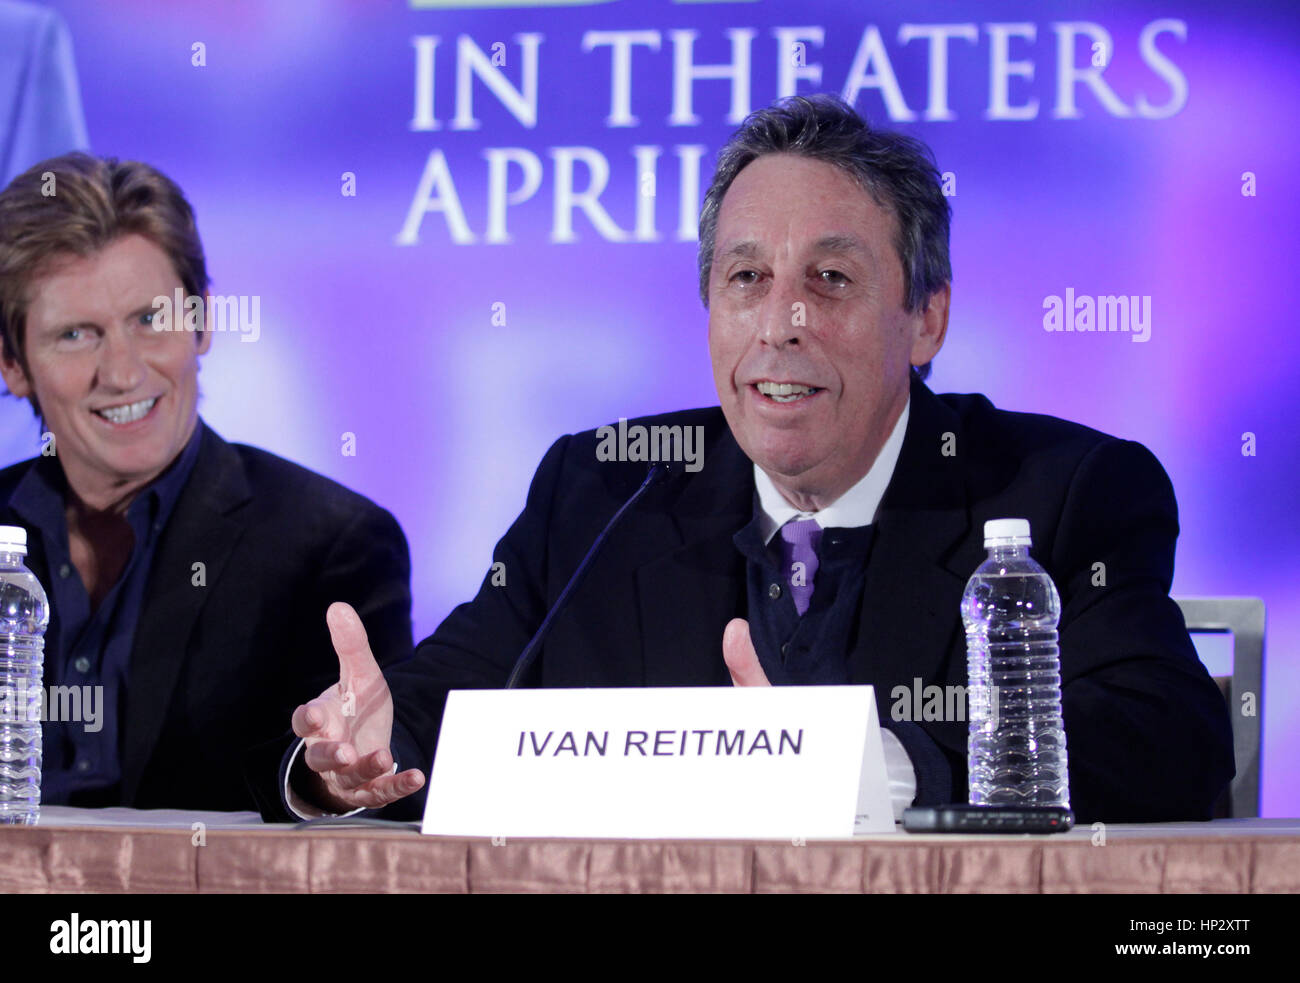 Regisseur Ivan Reitman auf der Pressekonferenz für den Film "Draft Day" am 31. Januar 2014 in New York, NY. Foto von Francis Specker Stockfoto